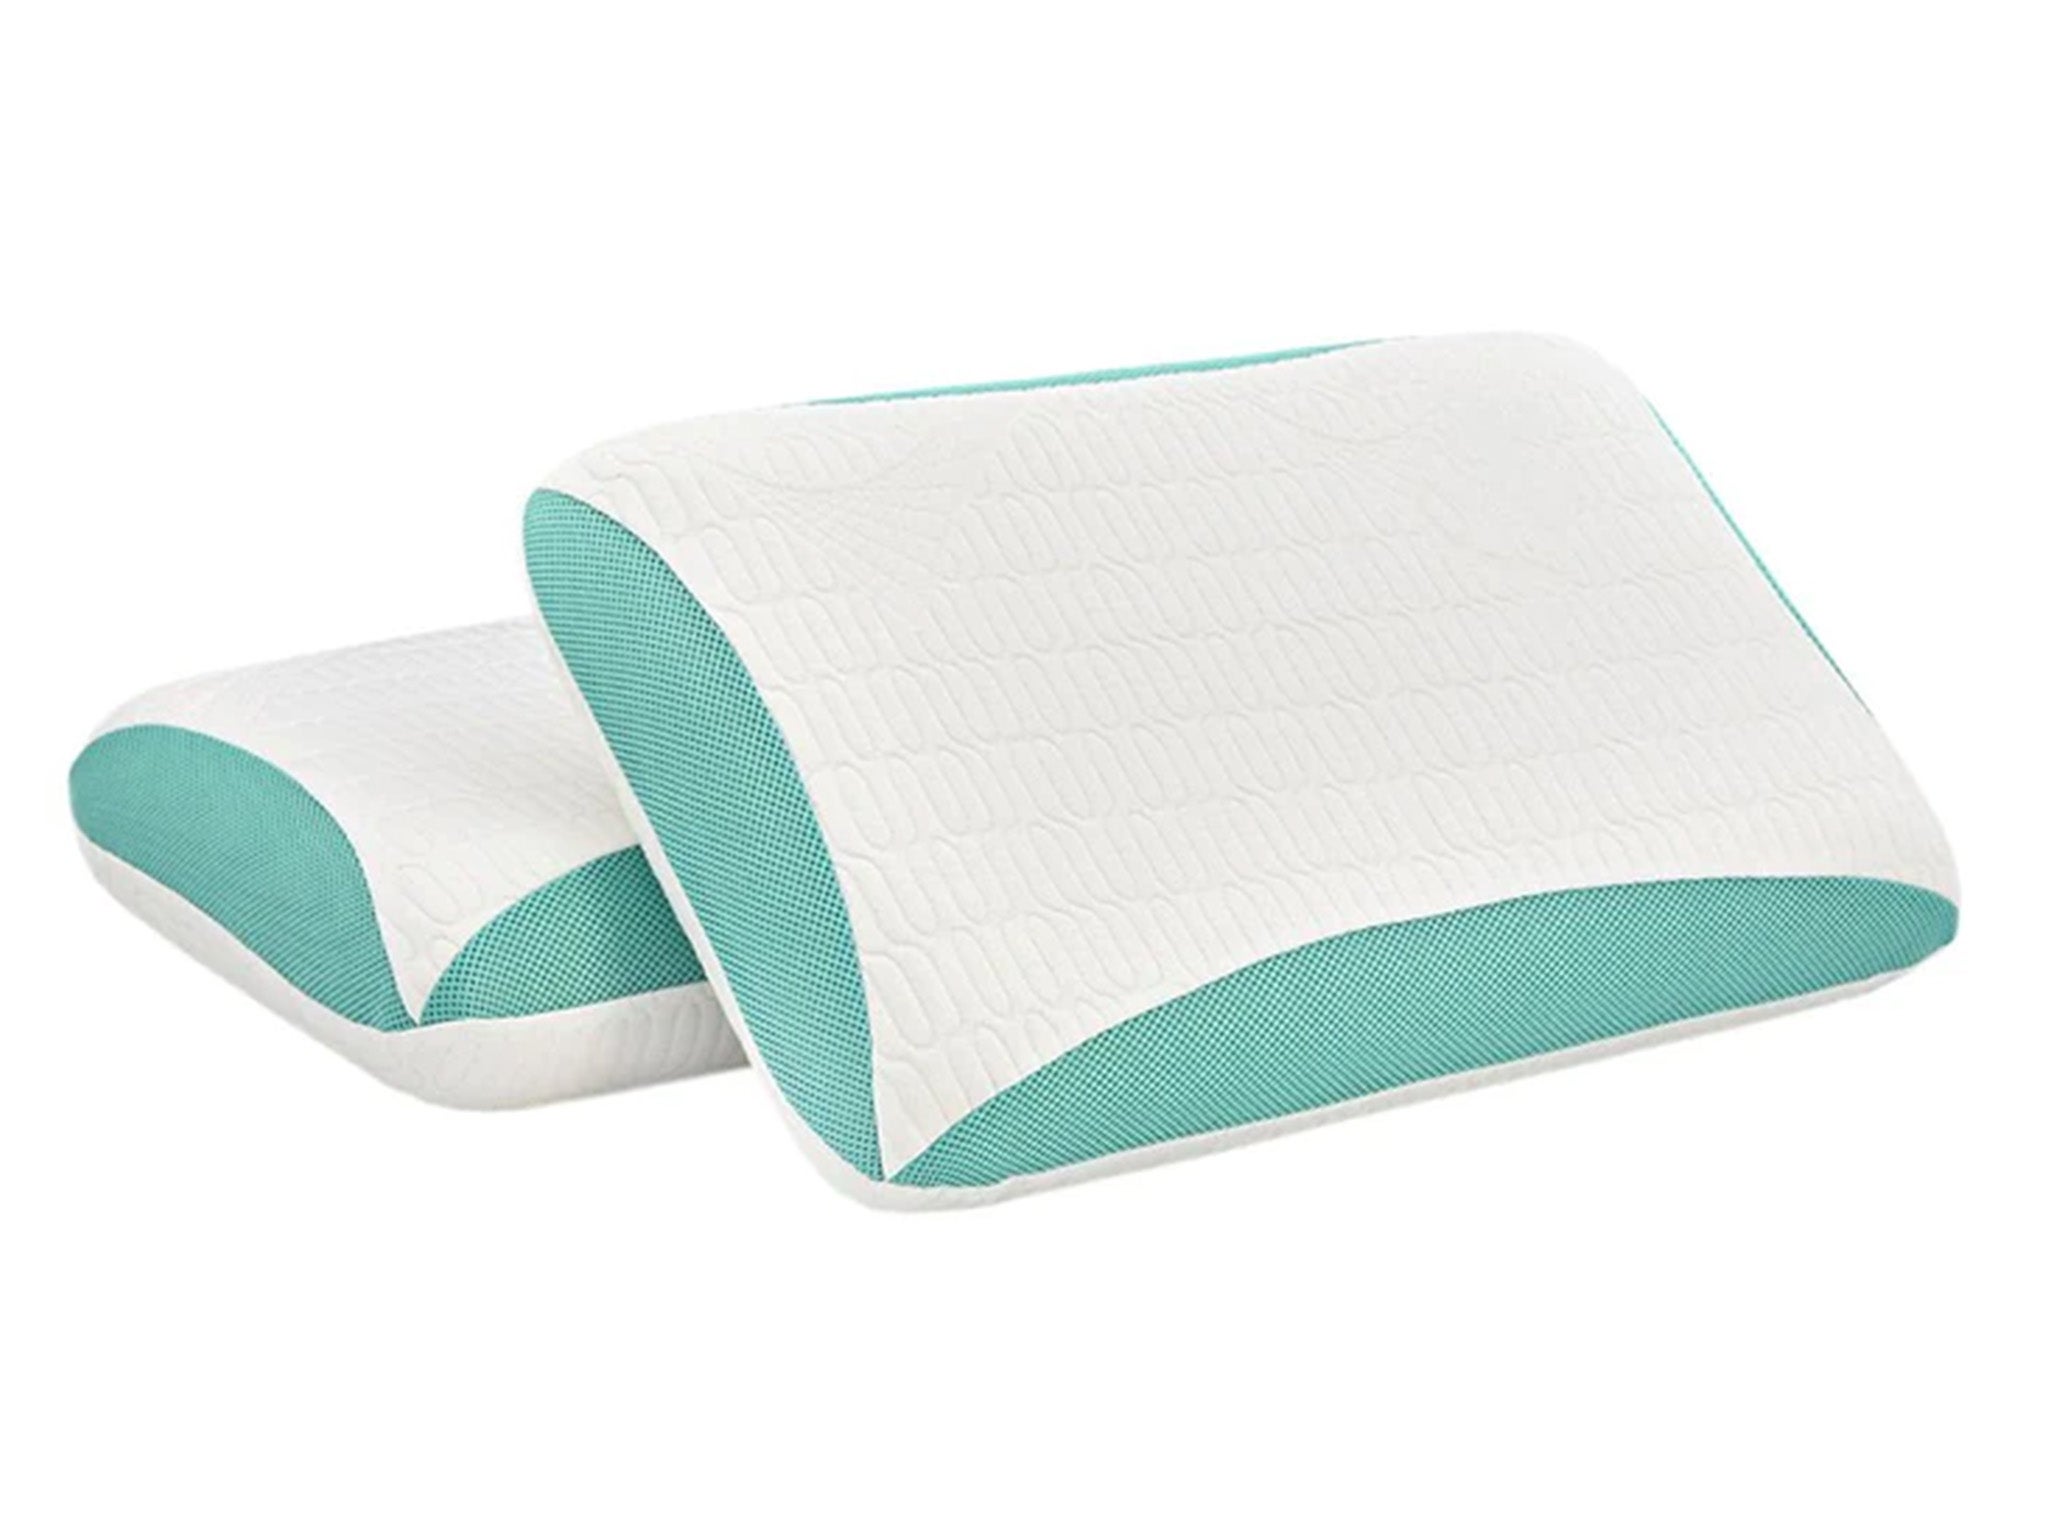 Rem-Fit 500 cool gel pillow